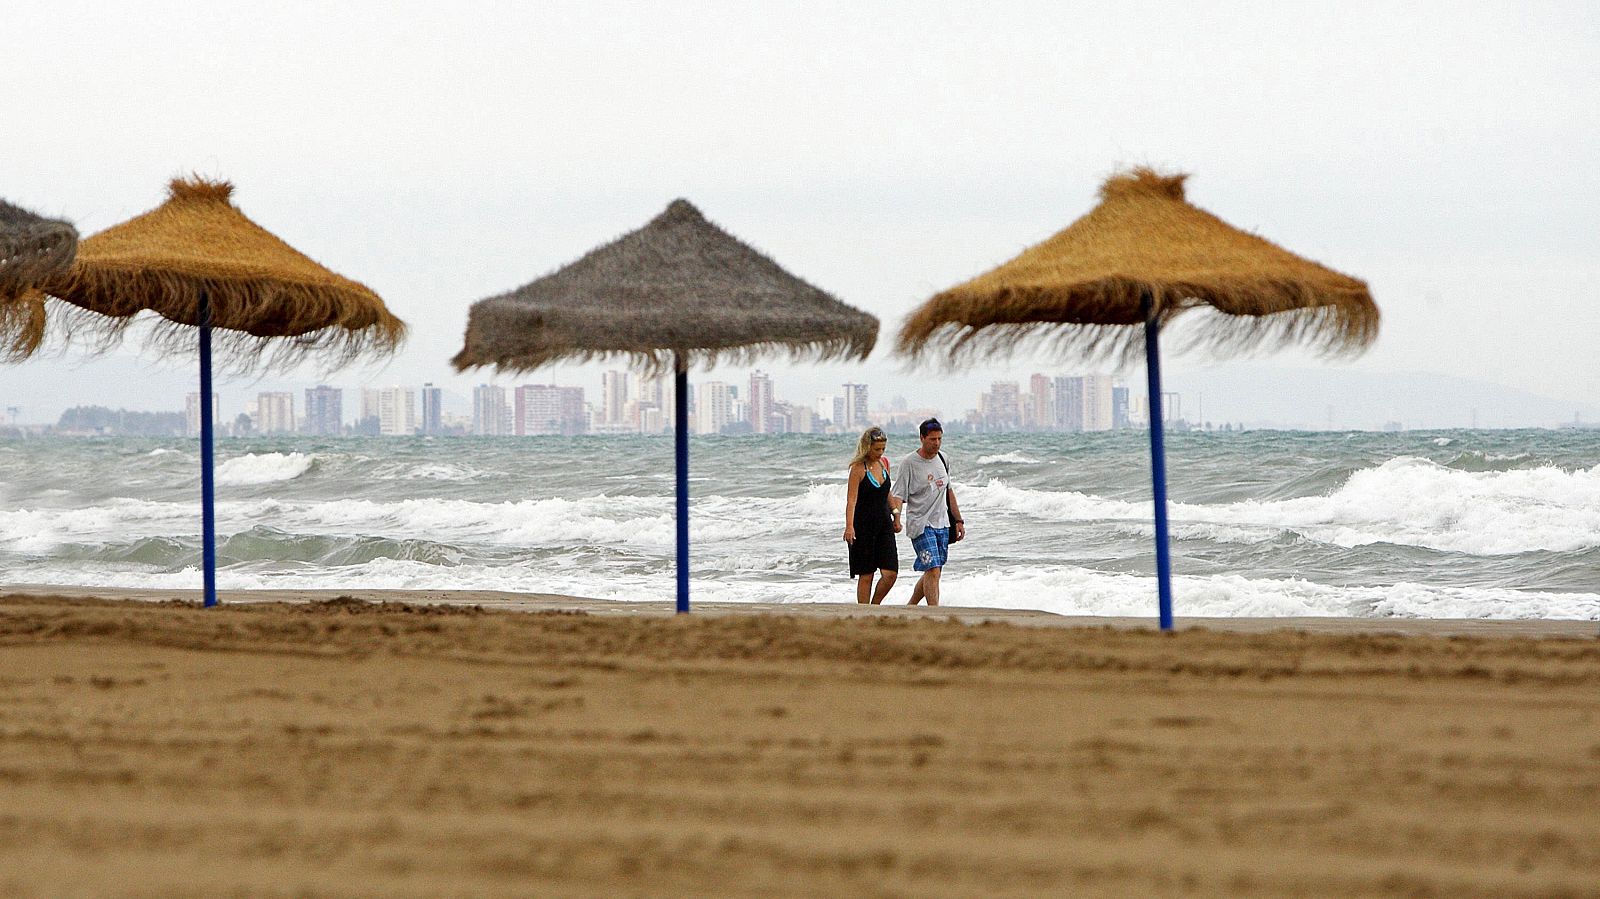 La playa de la Malvarrosa de Valencia, vacía de bañistas debido a las lluvias